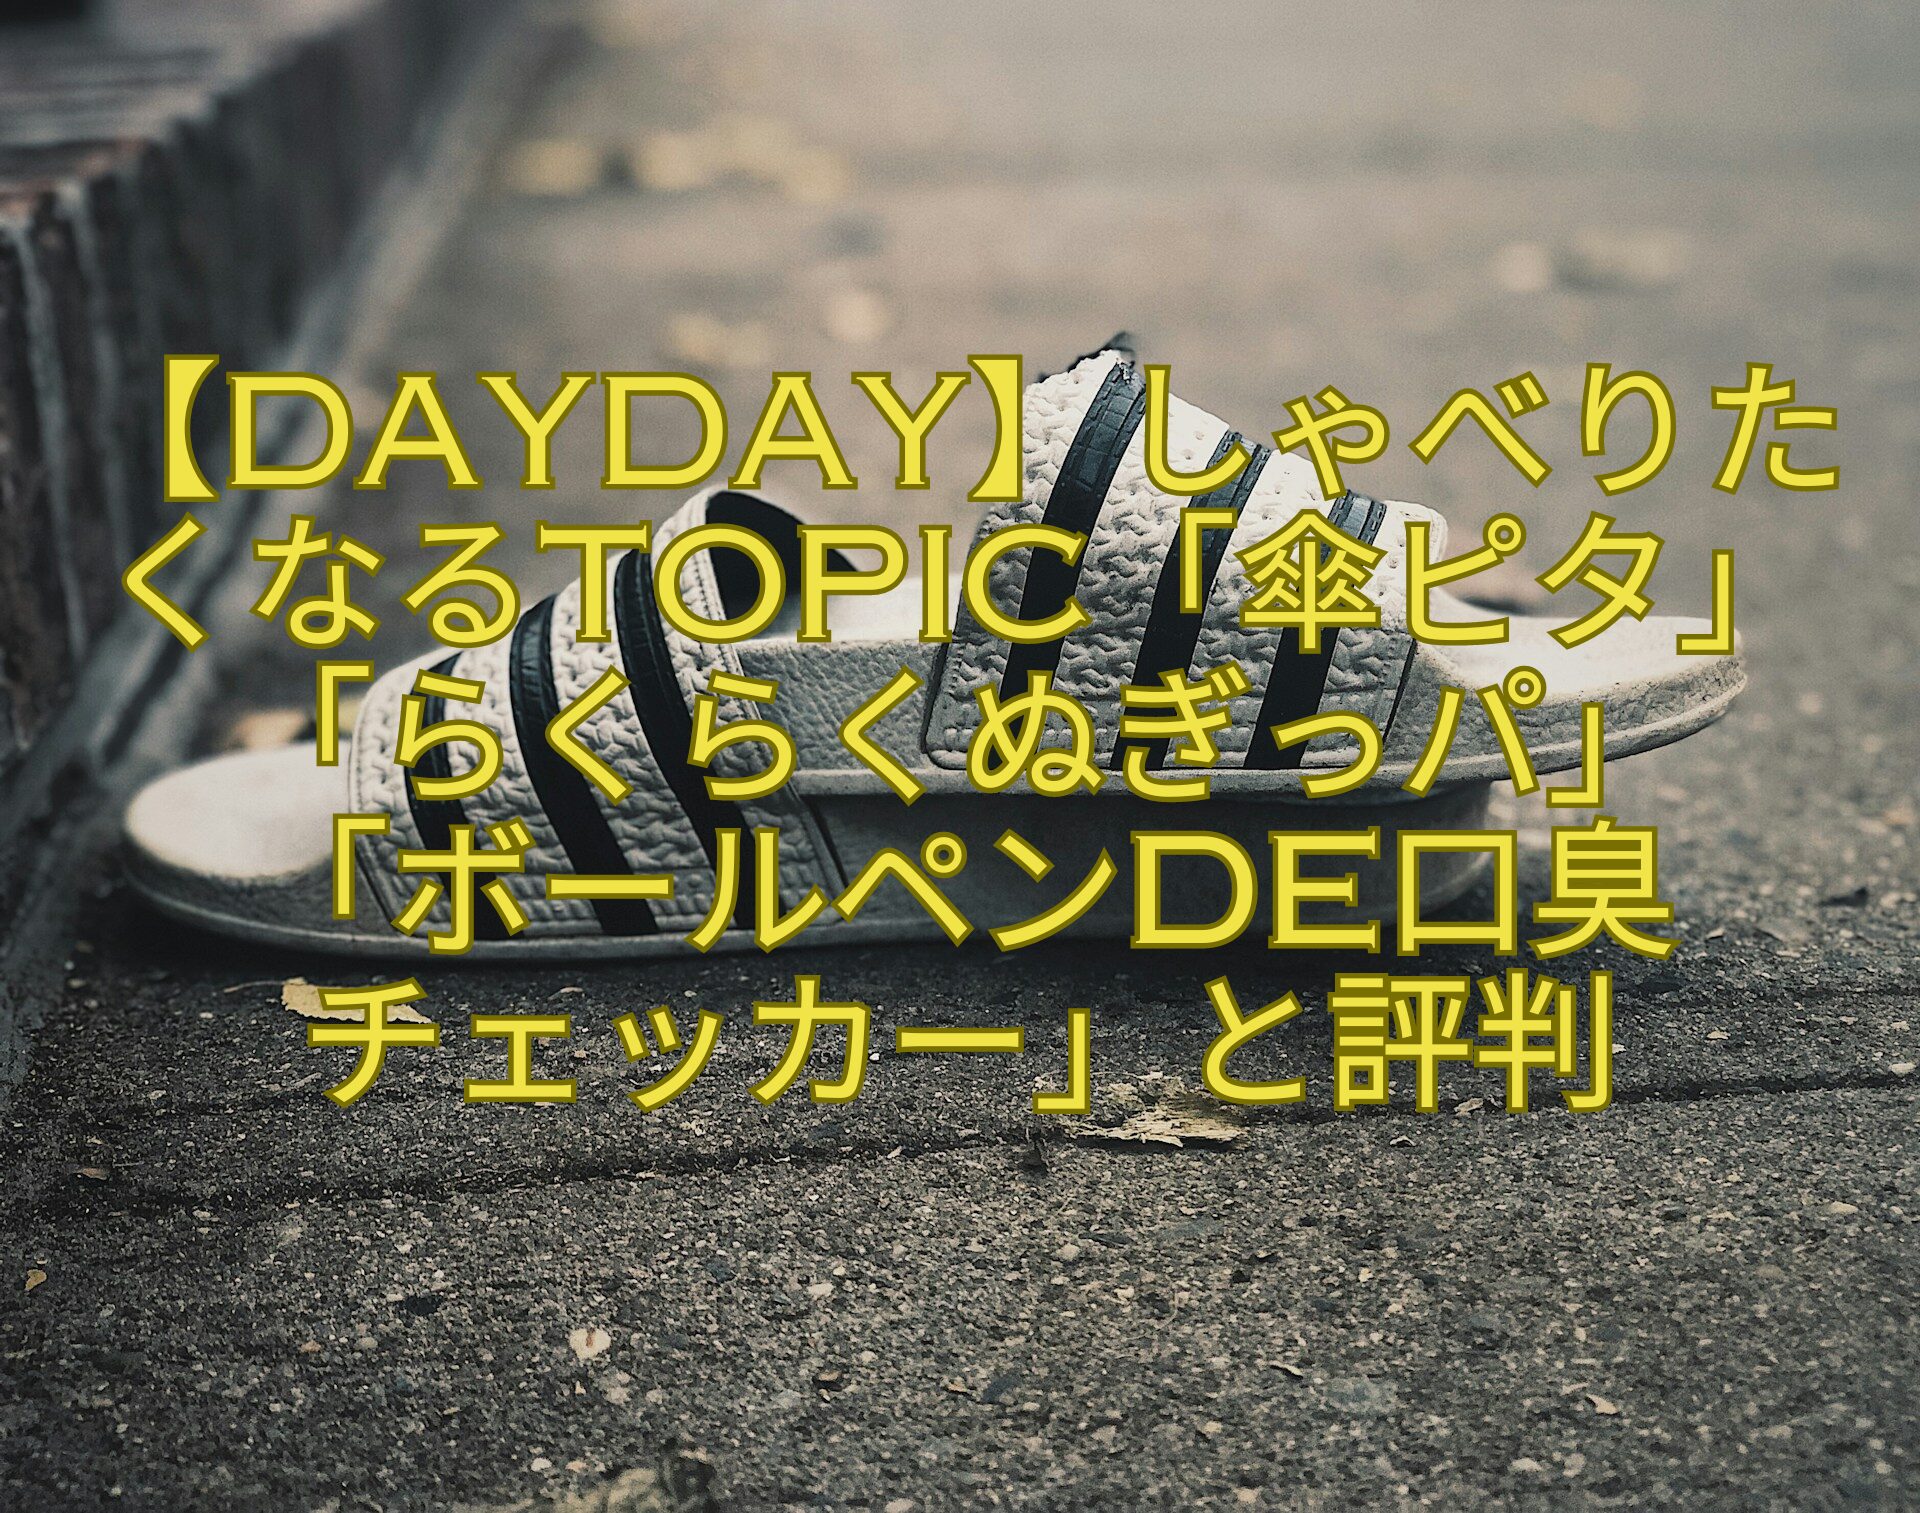 【DayDay】しゃべりたくなるtopic「傘ピタ」「らくらくぬぎっパ」-「ボールペンde口臭-チェッカー」と評判